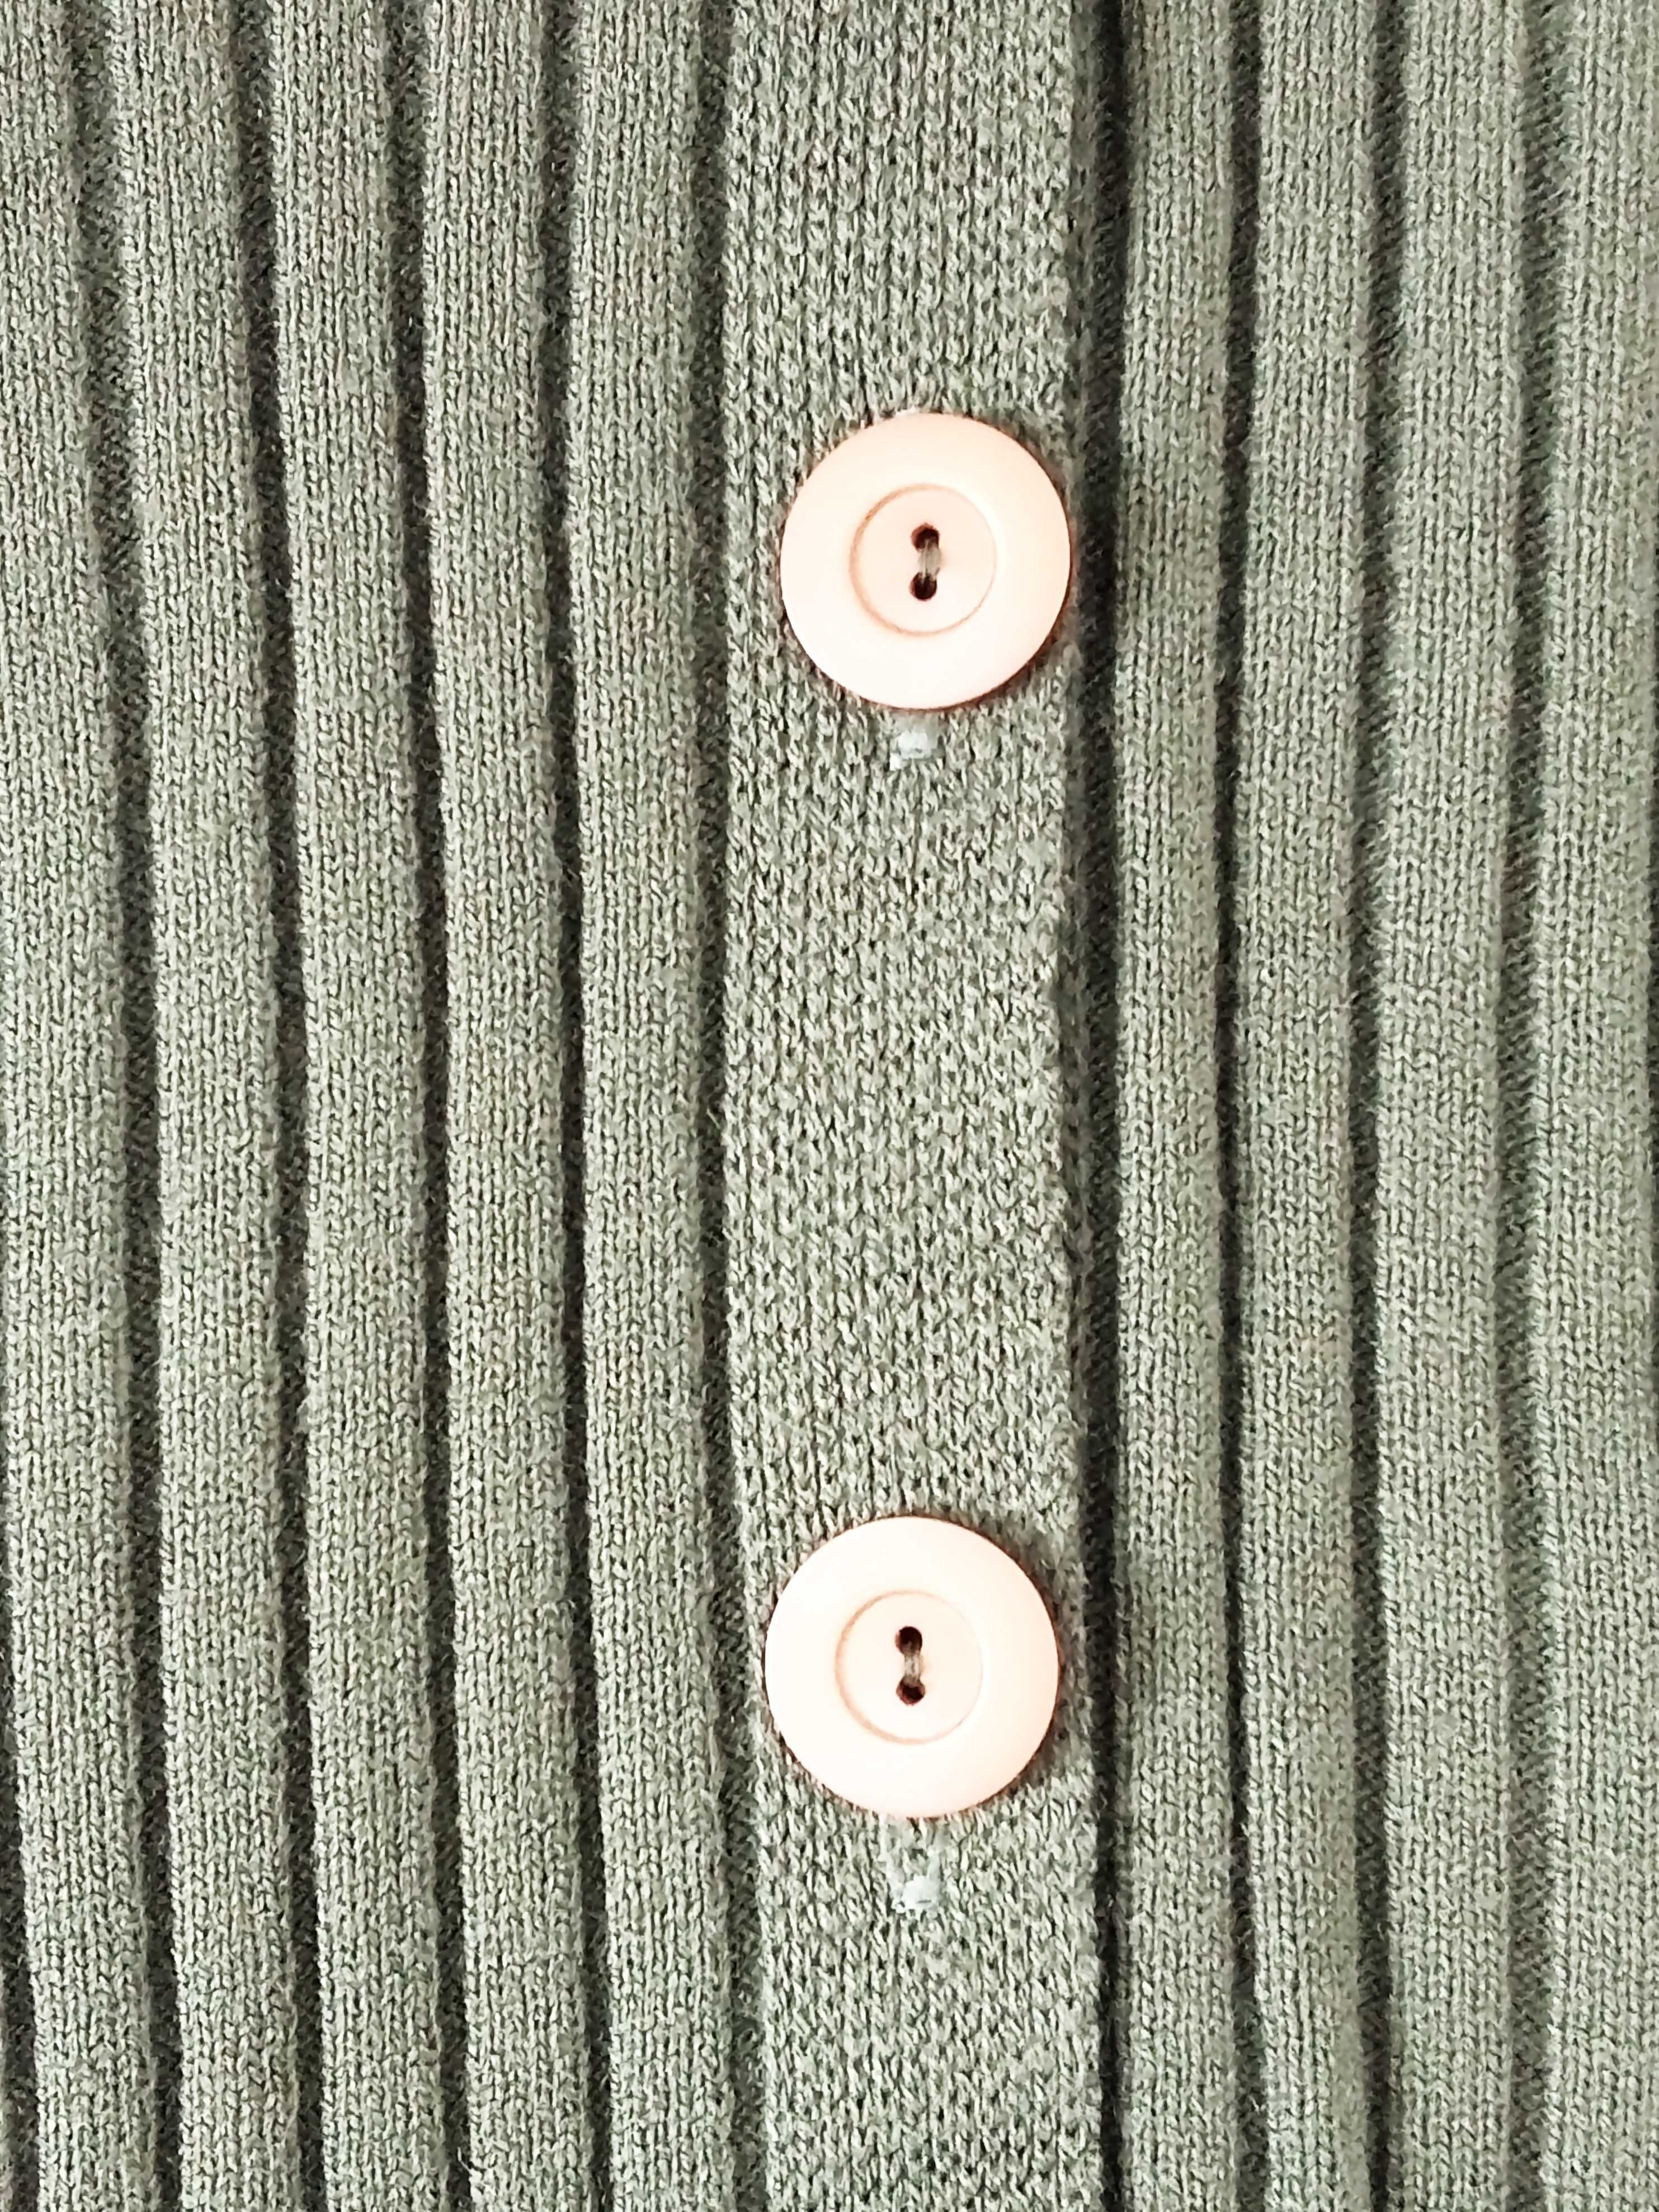 płaszcz z dzianiny długi sweter sukienka khaki zielona z kapturem